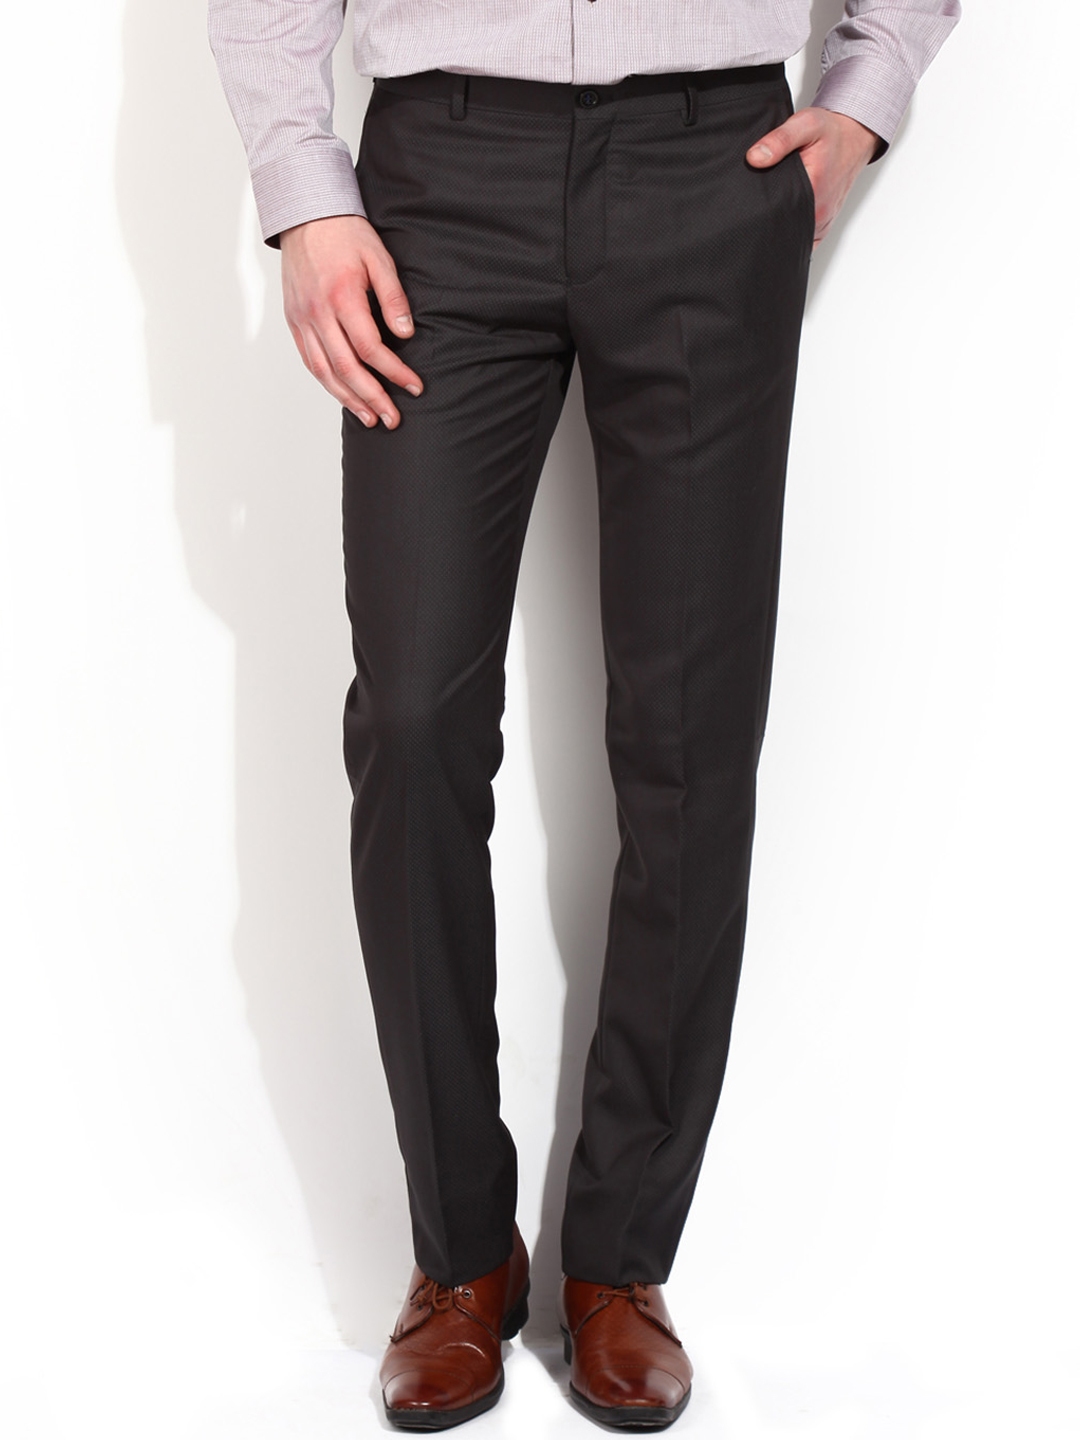 Katro Black Lntgrey Gold Formal Trouser For Mens